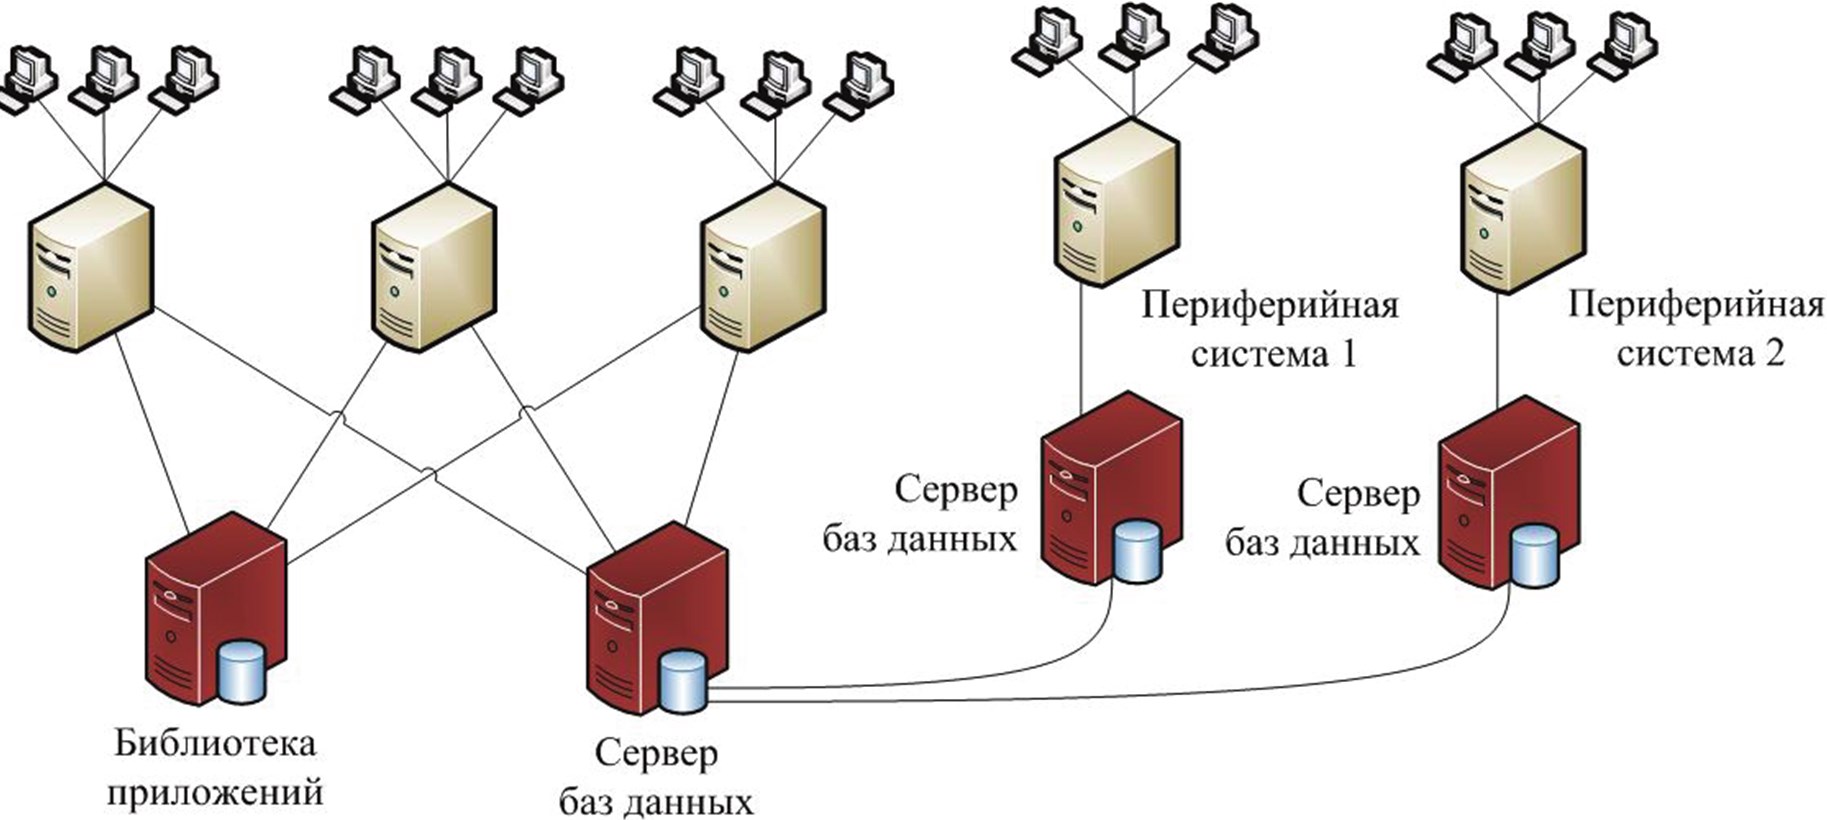 Ис сервер. Сервер базы данных + сервер приложений. Схема сервера базы данных. Сервер БД схема. Информационная система с сервером базы данных.